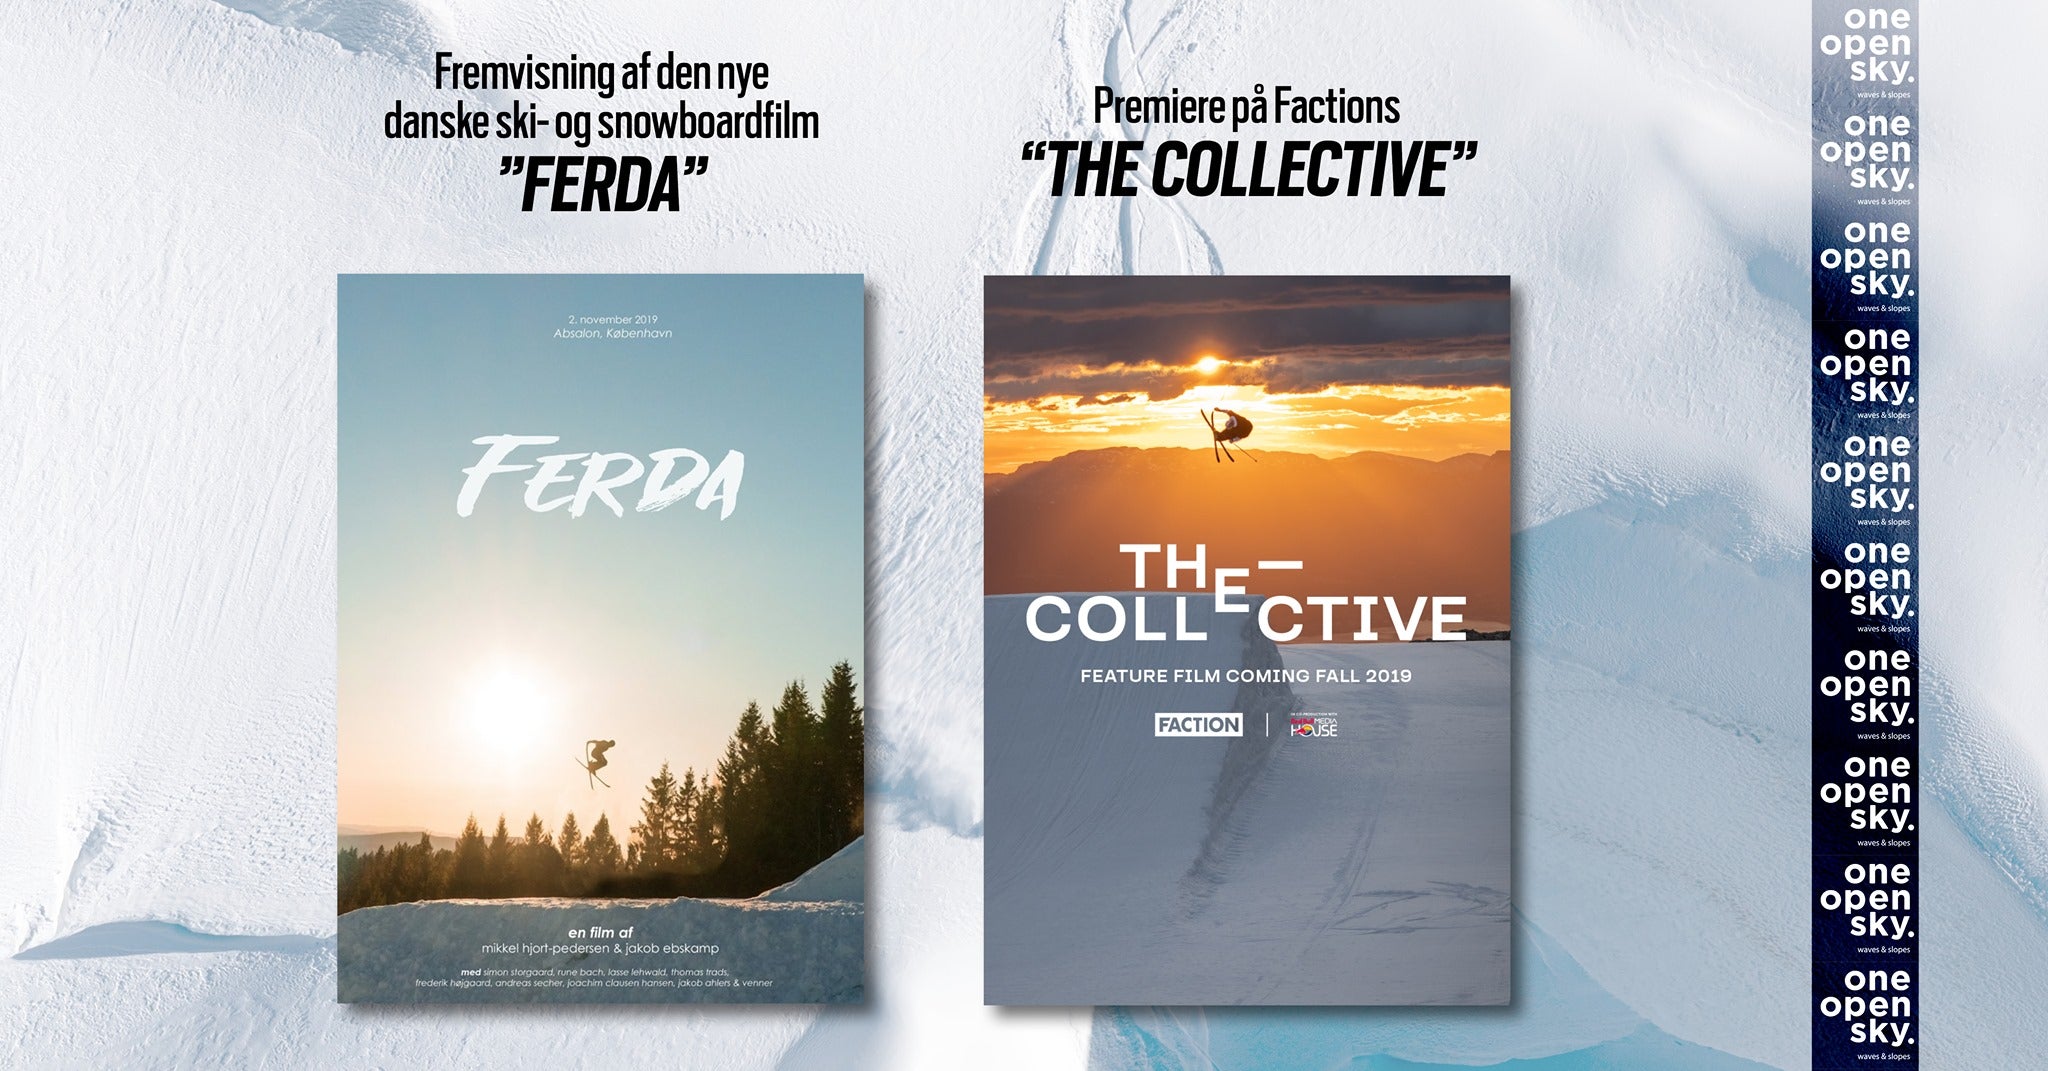 Aarhus inviteres til premiere på Factions ’The Collective’ og Ferda